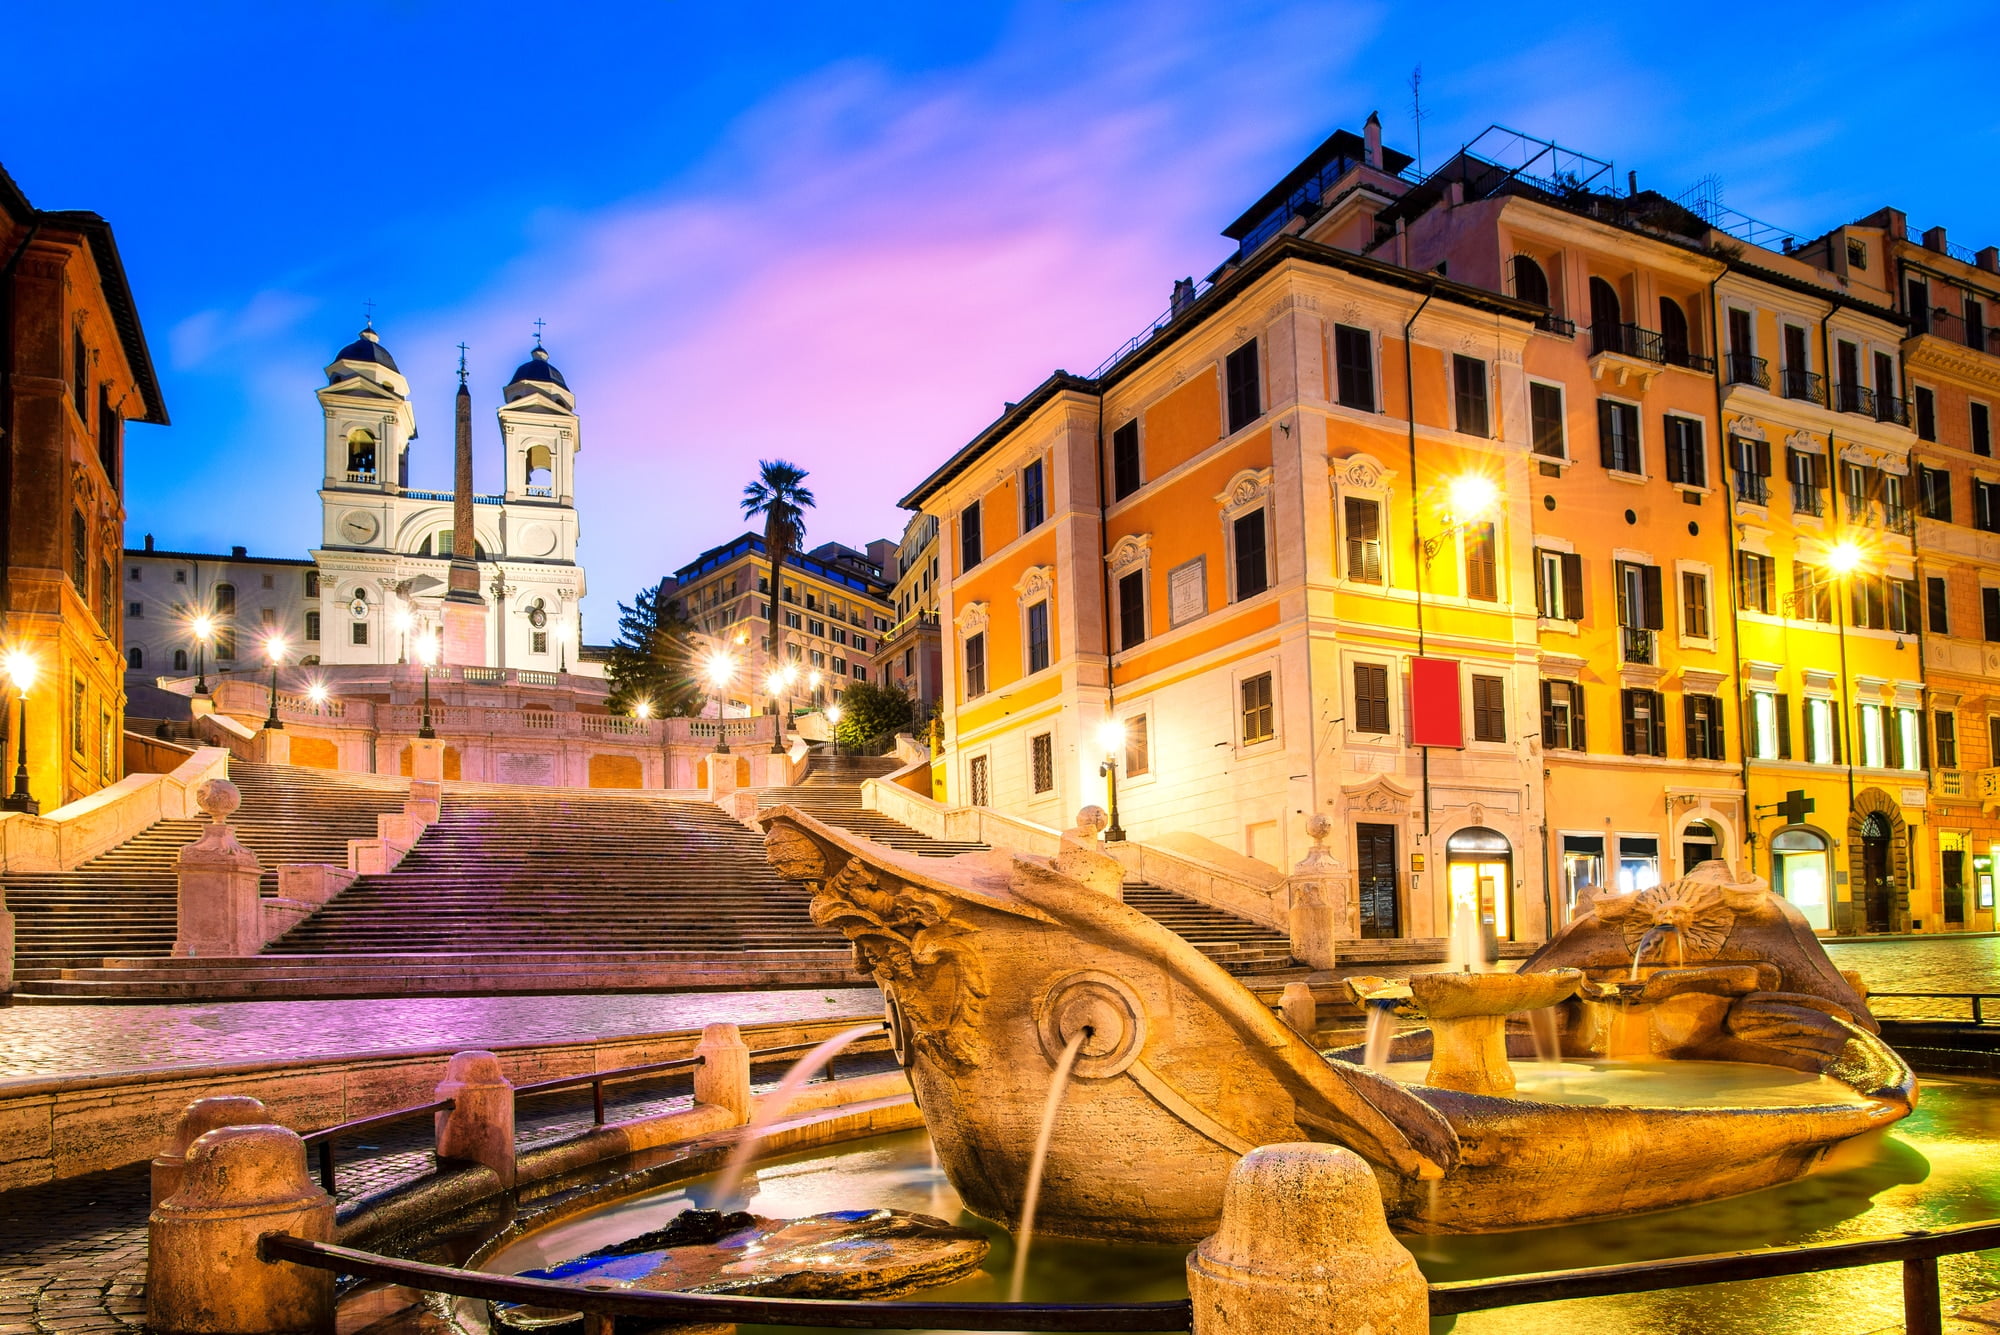 Hvis du leder efter et sted at slappe af og se på folk i Rom, er Den Spanske Trappe det perfekte sted. Trappen ligger på Piazza di Spagna og er et populært samlingssted for både turister og lokale. På en varm dag vil du finde folk, der solbader på trappen eller nyder en gelato fra en af de nærliggende caféer. Den Spanske Trappe er også et godt sted at tage billeder, hvor det smukke springvand i bunden fungerer som en perfekt kulisse.